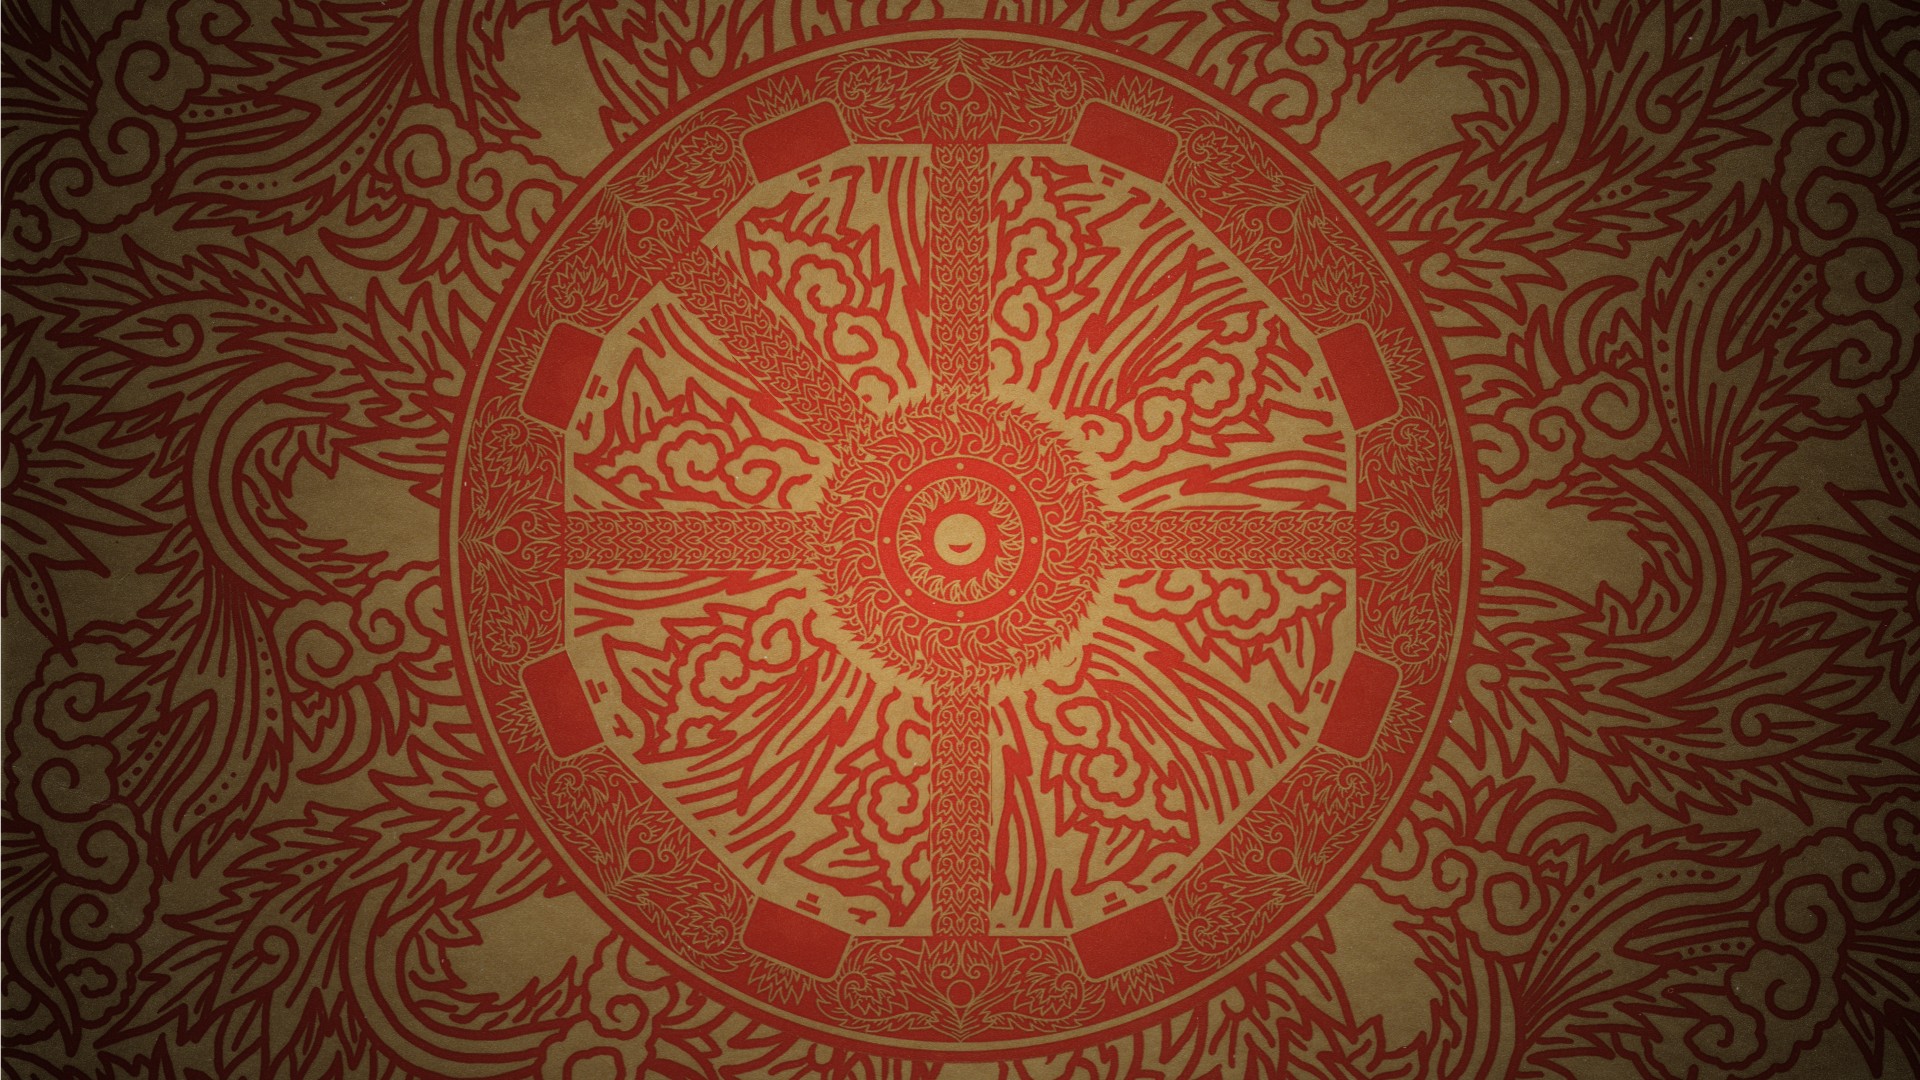 the burning wheel, Luke Crane Wallpaper